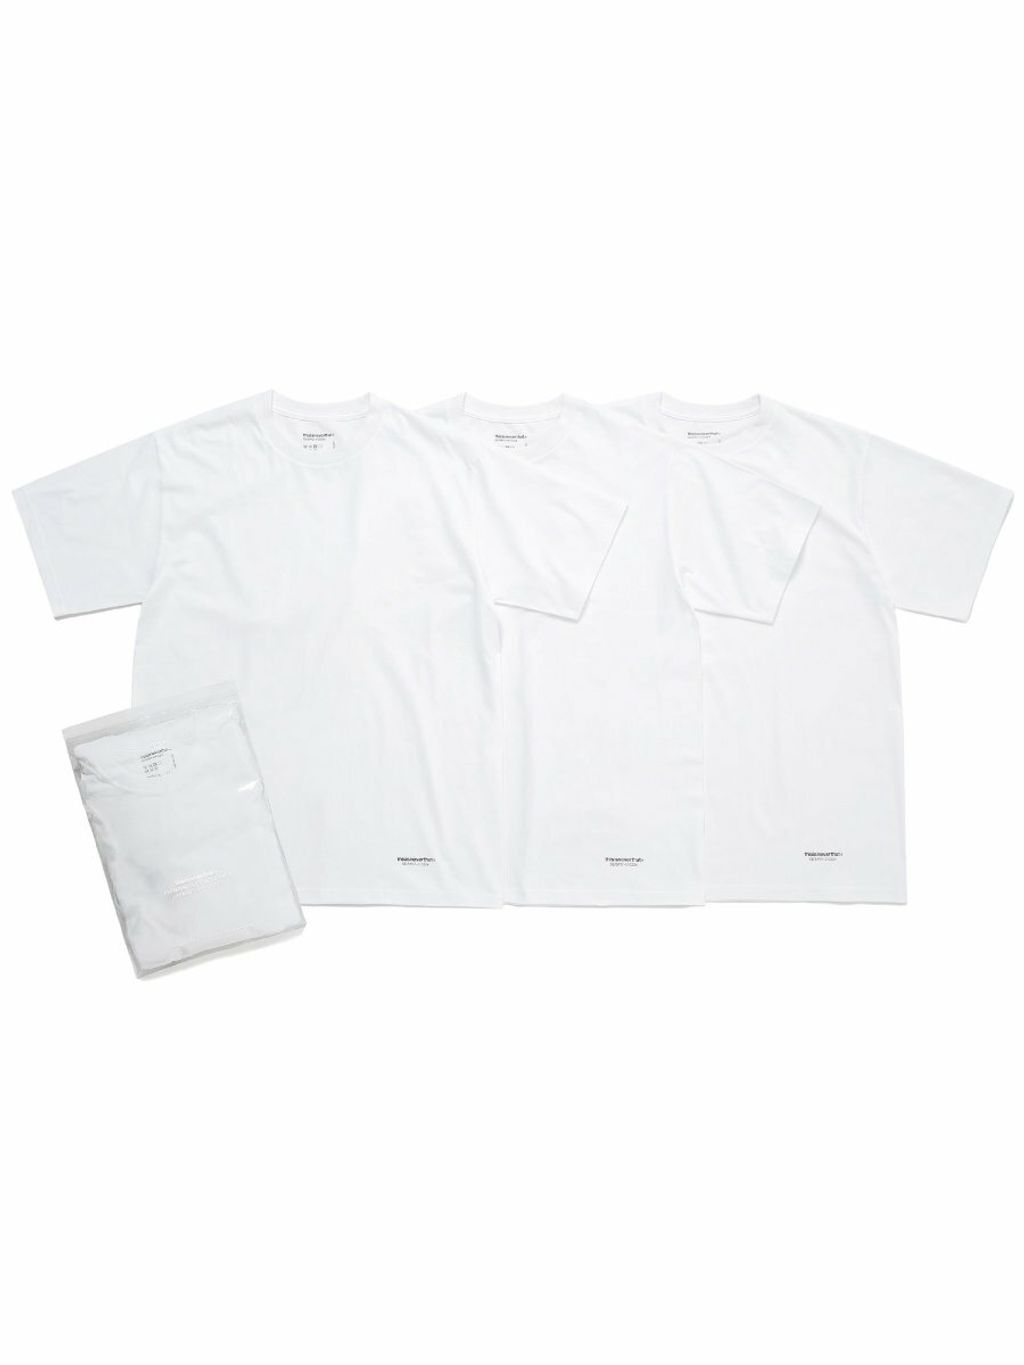 3-tagless-t-shirts-506990_1080x.jpeg